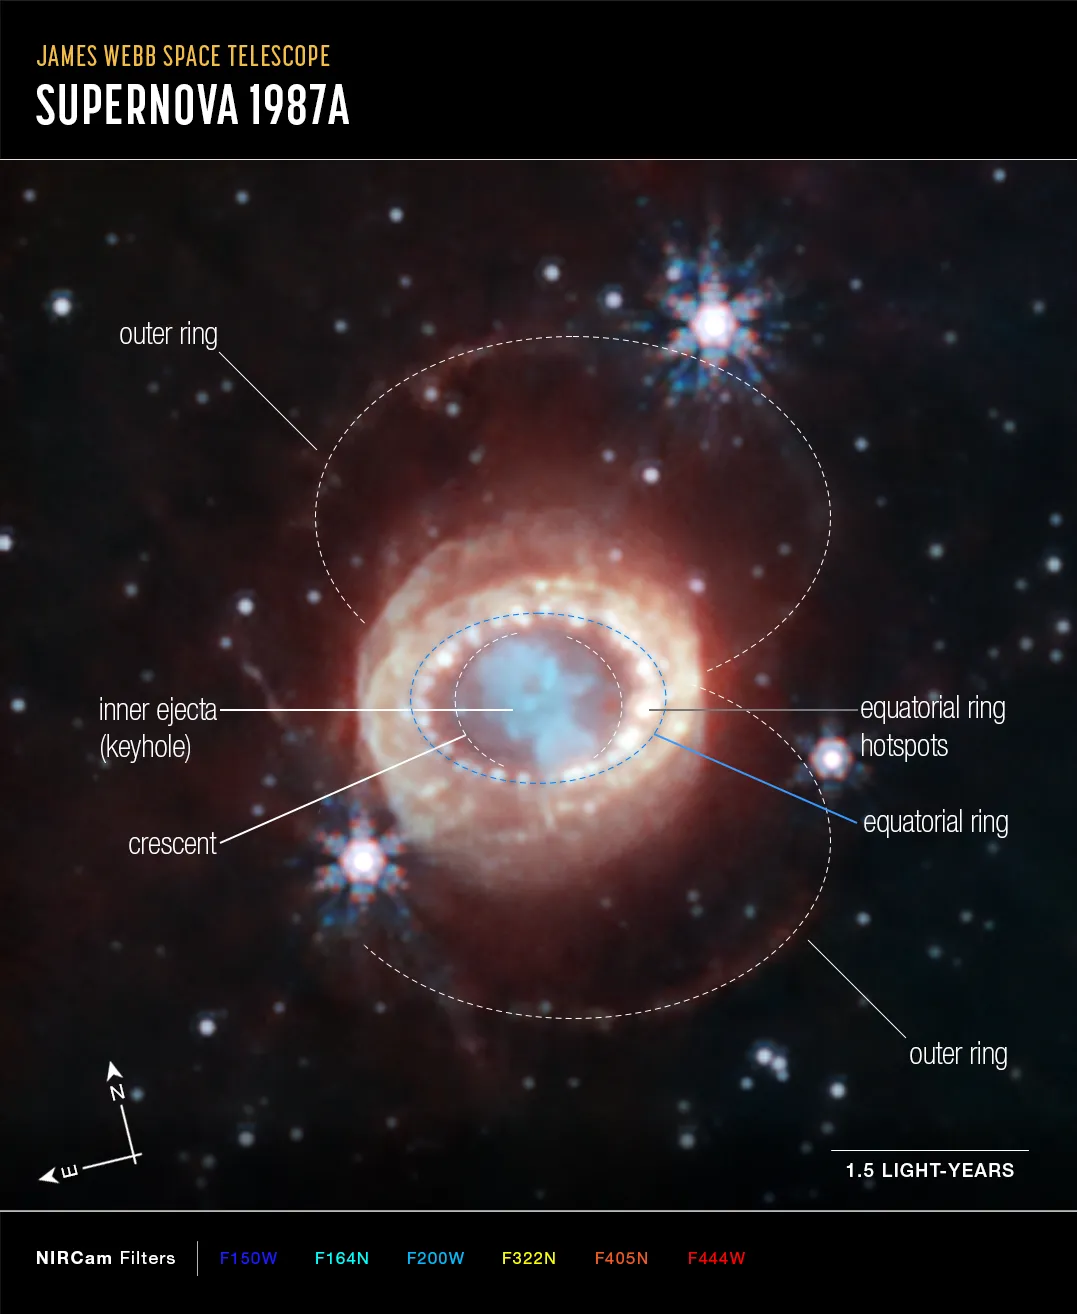 韦伯的近红外相机所拍摄SN 1987A的影像。其中蓝色代表1.5微米（F150W）、青色1.64和2.0微米（F164N、F200W）、黄色3.23微米（F323N）、橙色4.05微米（F405N）和红色4.44微米（F444W）。Webb’s NIRCam (Near-Infrared Camera) captured this detailed image of SN 1987A (Supernova 1987A), which has been annotated to highlight key structures. At the center, material ejected from the supernova forms a keyhole shape. Just to its left and right are faint crescents newly discovered by Webb. Beyond them an equatorial ring, formed from material ejected tens of thousands of years before the supernova explosion, contains bright hot spots. Exterior to that is diffuse emission and two faint outer rings. In this image blue represents light at 1.5 microns (F150W), cyan 1.64 and 2.0 microns (F164N, F200W), yellow 3.23 microns (F323N), orange 4.05 microns (F405N), and red 4.44 microns (F444W).